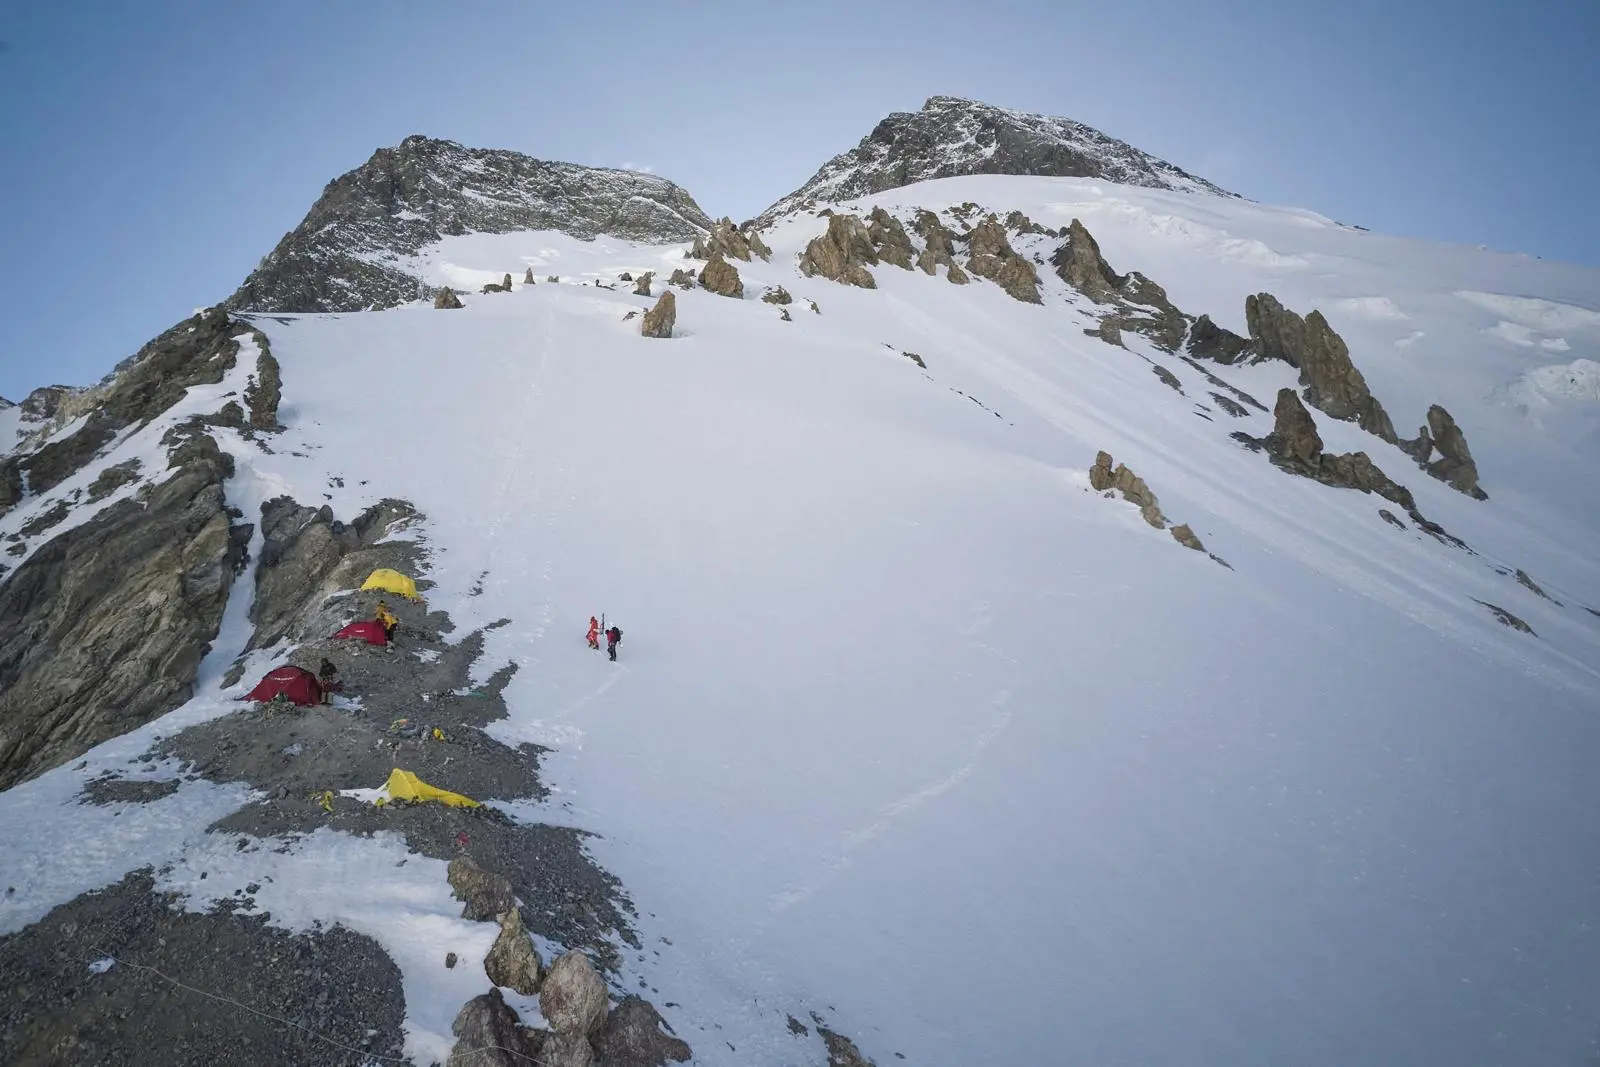 Третій висотний табір на восьмитисячнику Броуд-Пік. Фото Anna Tybor